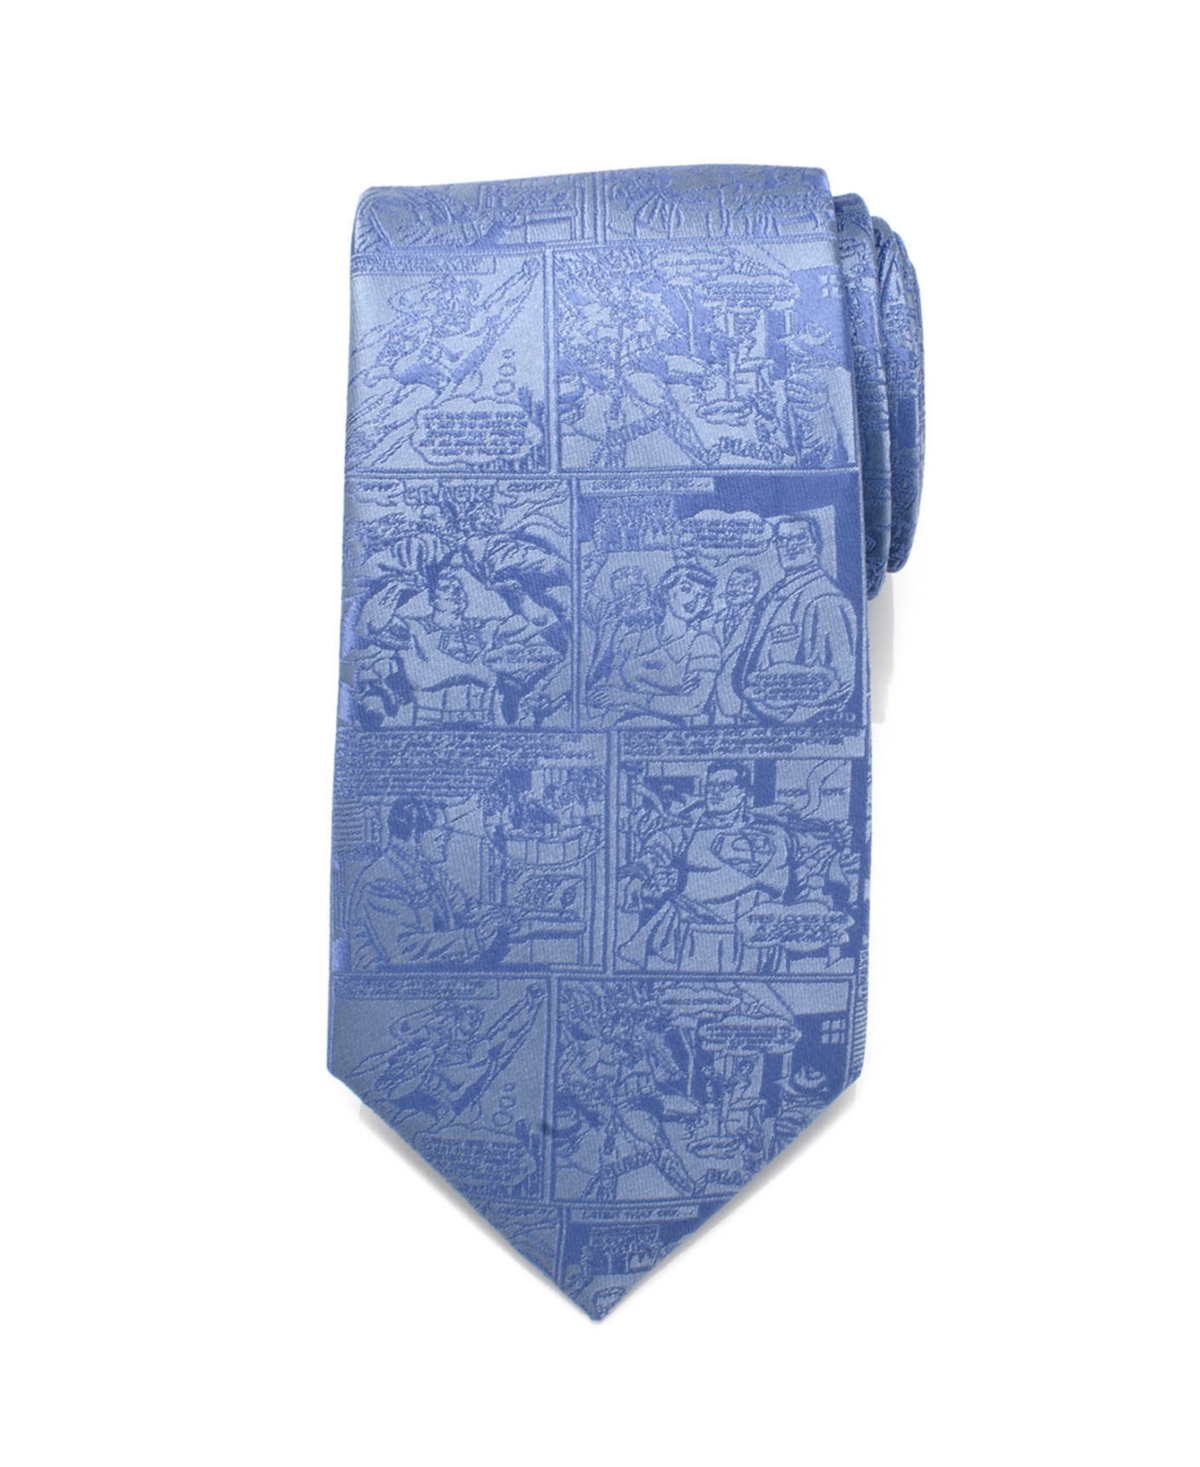 Superman Comic Men's Tie - Blue